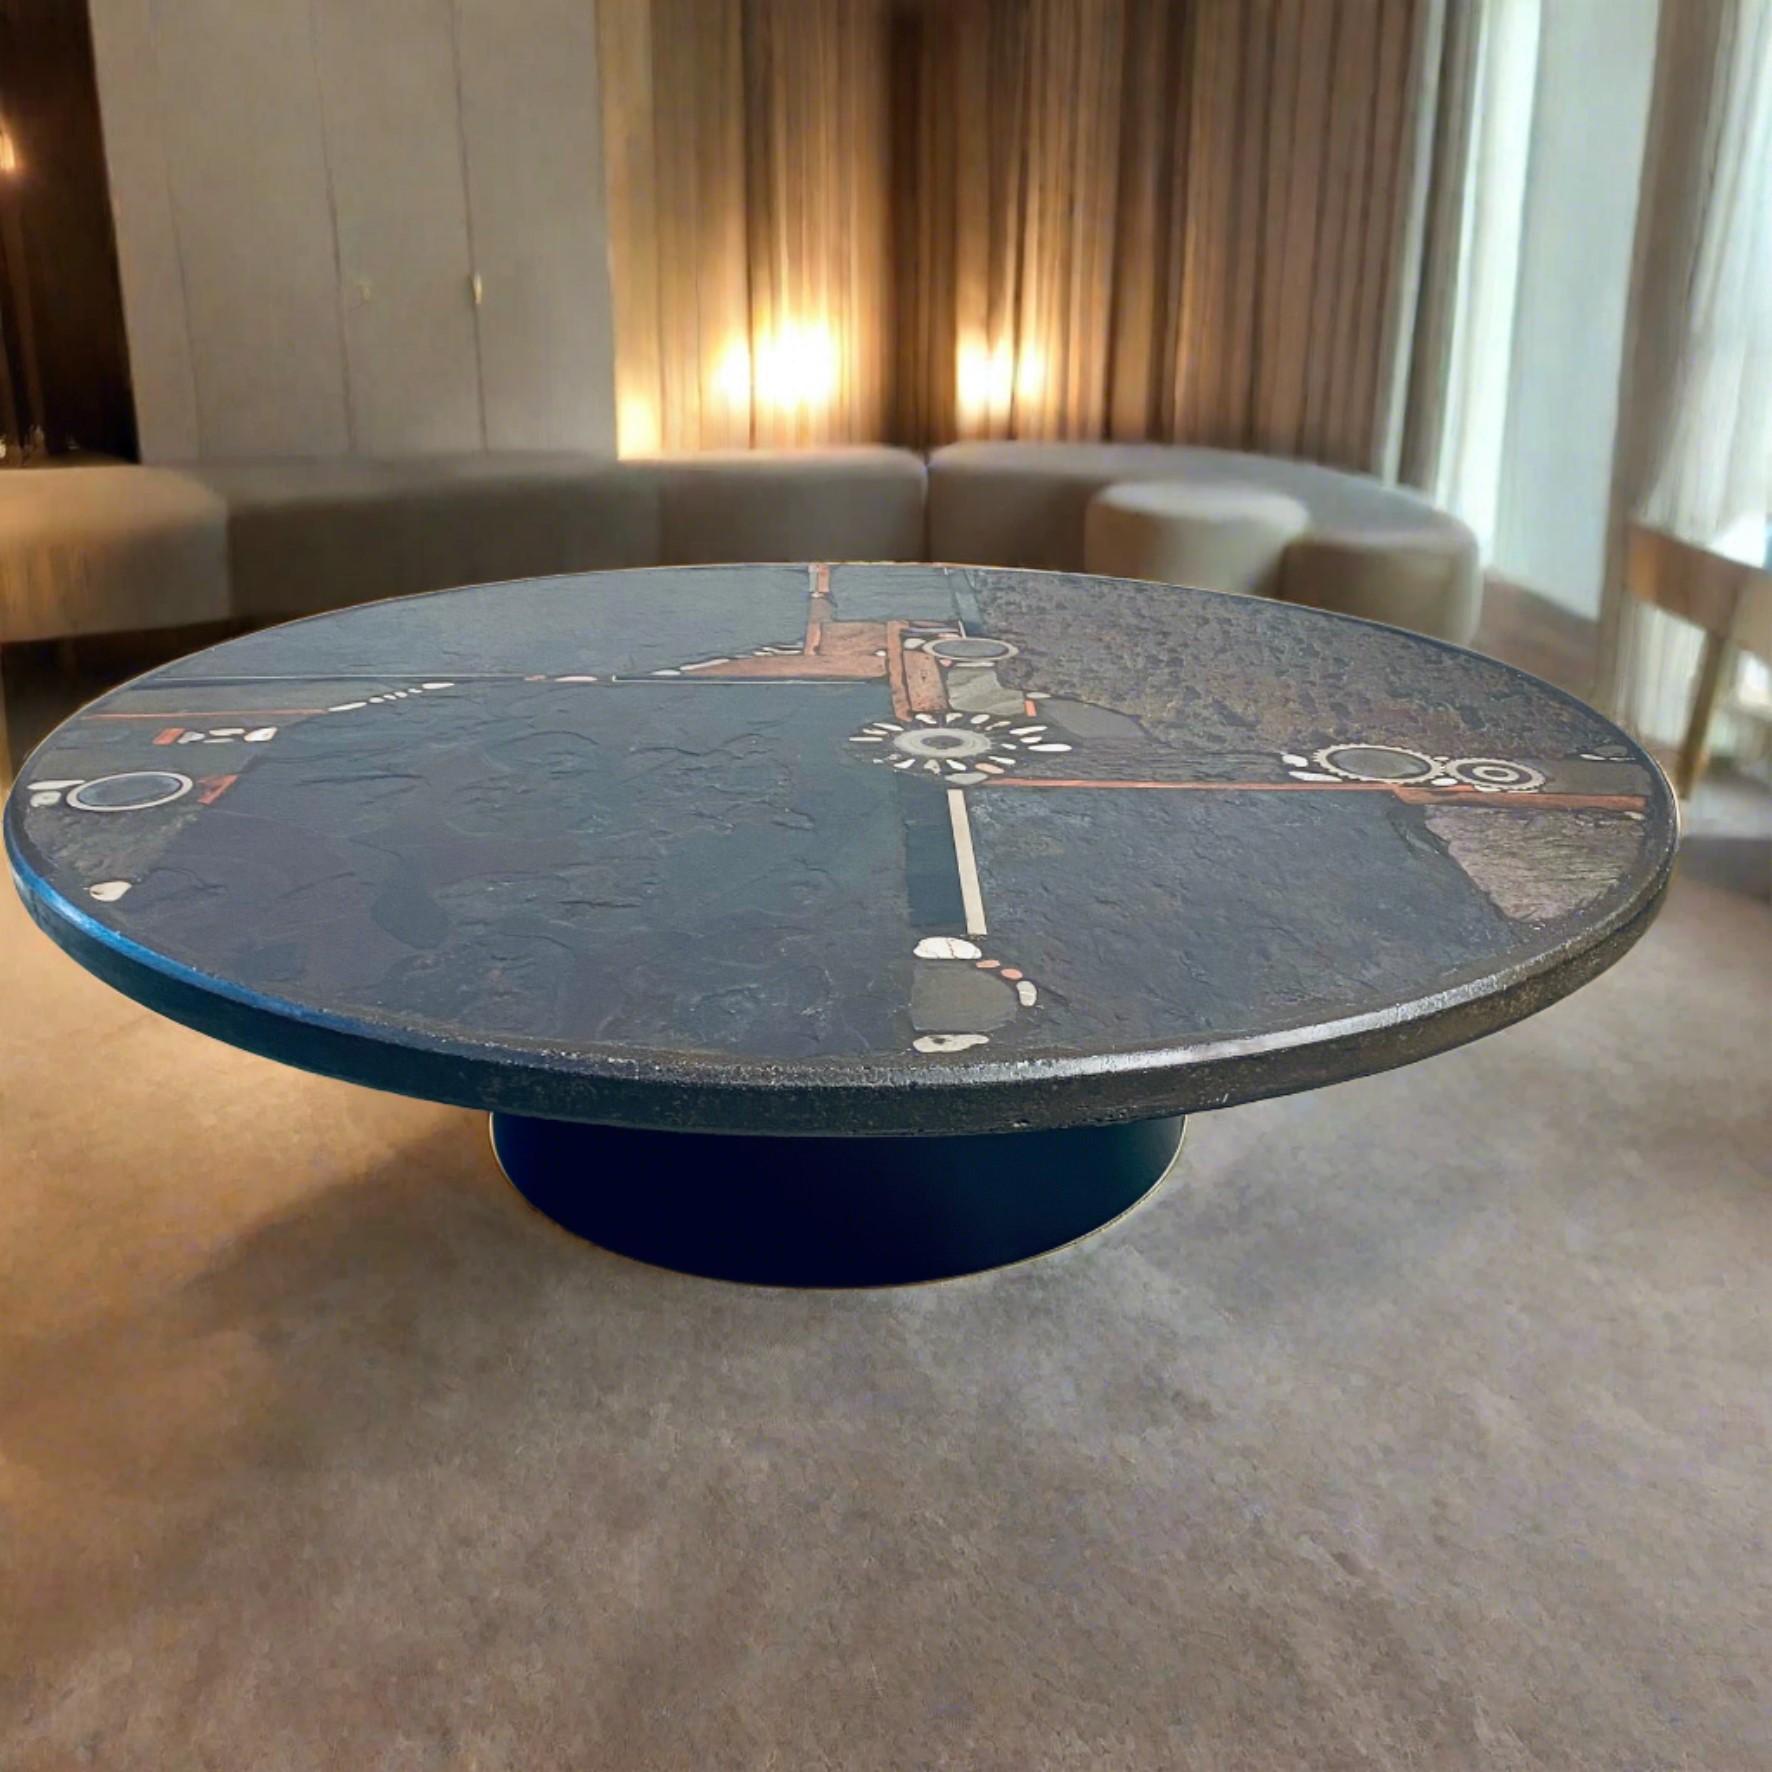 Table basse brutaliste conçue et fabriquée par Paul Kingma, Pays-Bas 1985.

Voici la table basse ronde brutaliste du célèbre sculpteur Paul Kingma, fabriquée aux Pays-Bas en 1984. Cette pièce emblématique témoigne de l'esthétique et du savoir-faire